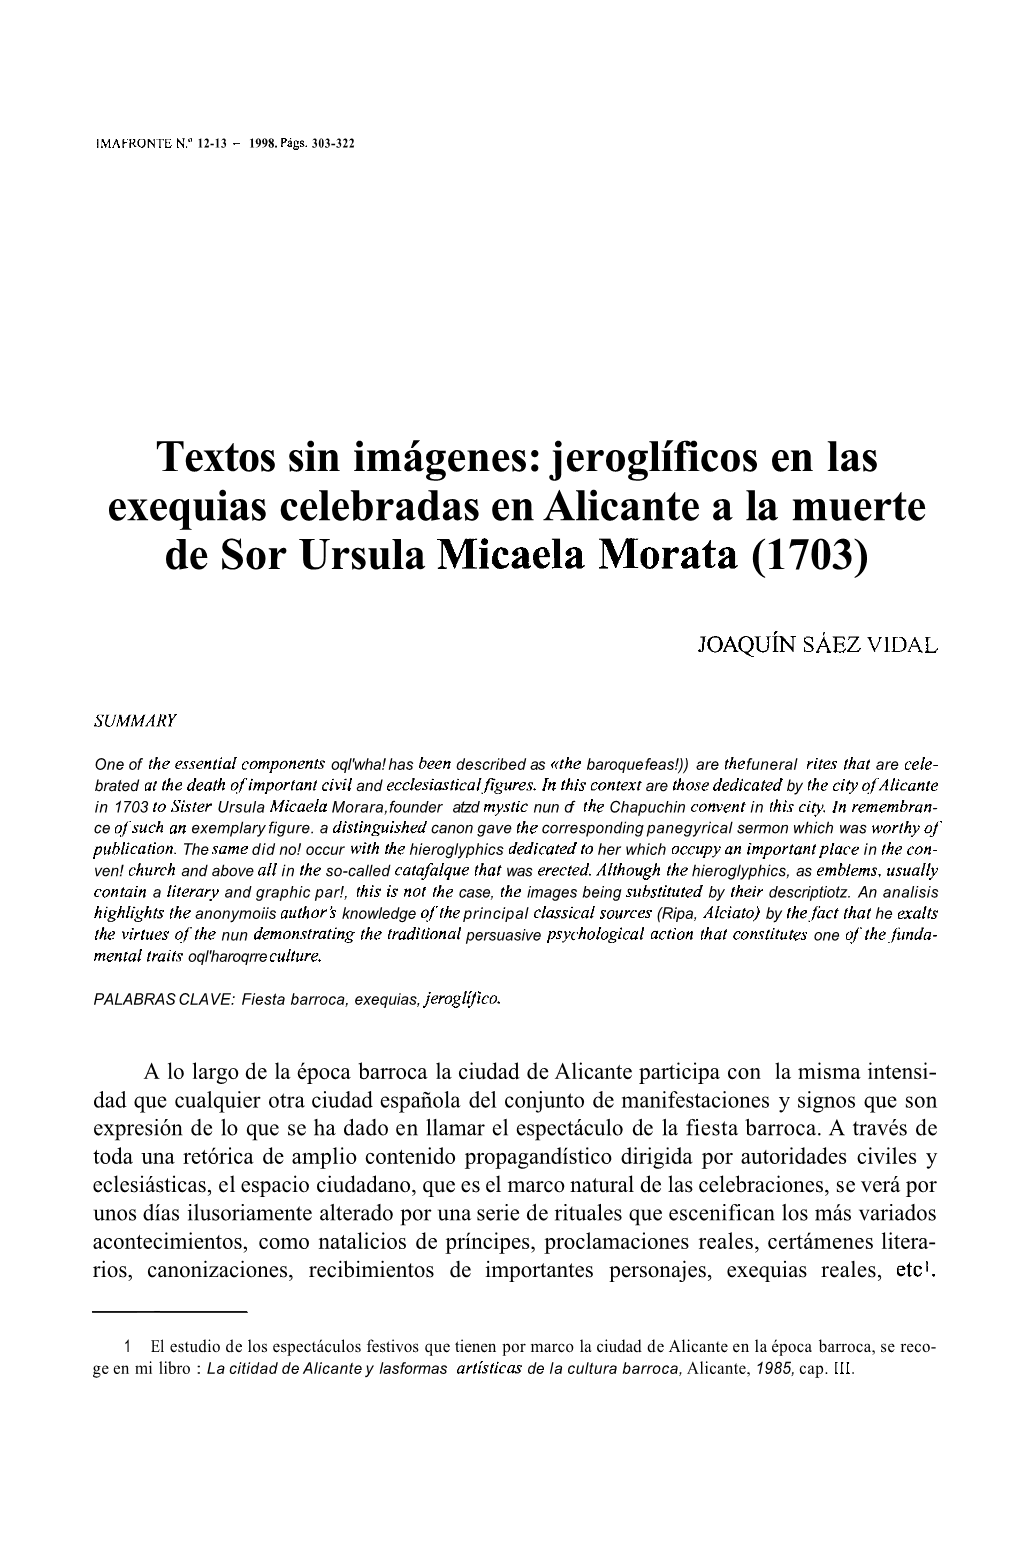 Jeroglíficos En Las Exequias Celebradas En Alicante a La Muerte De Sor Ursula Micaela Morata (1703)